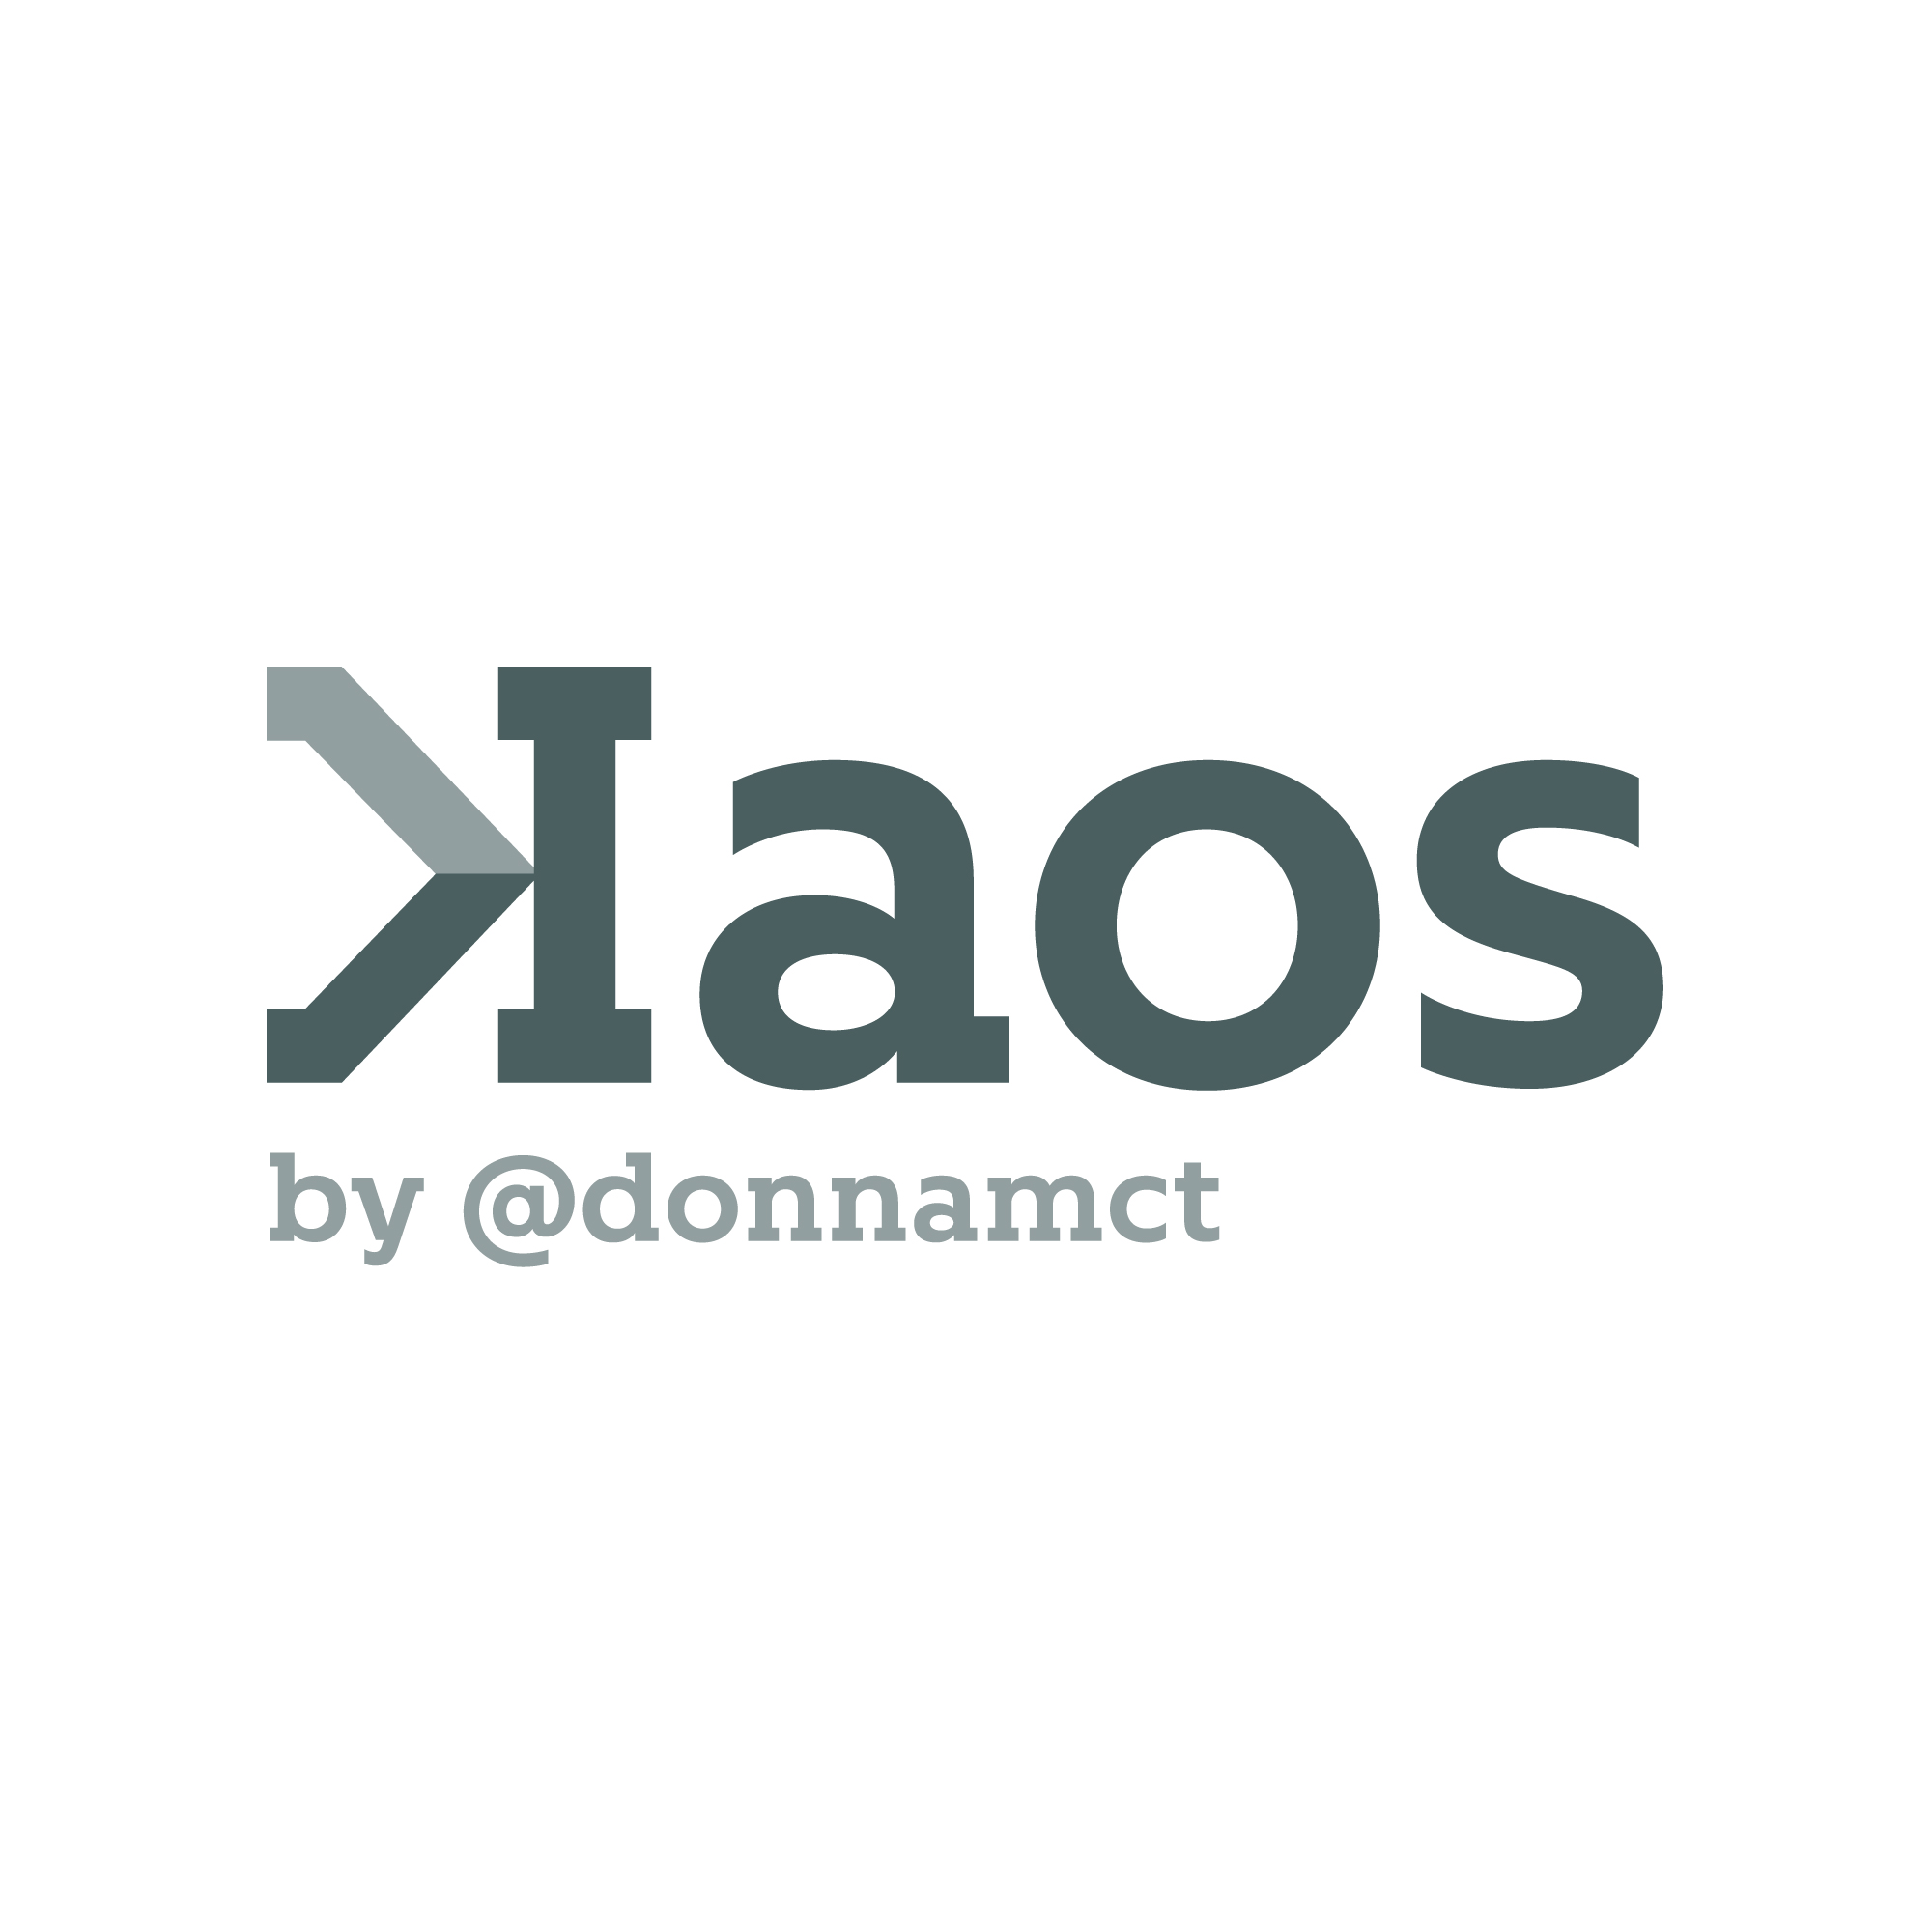 kaos-logo-square-whiteBGD.jpg